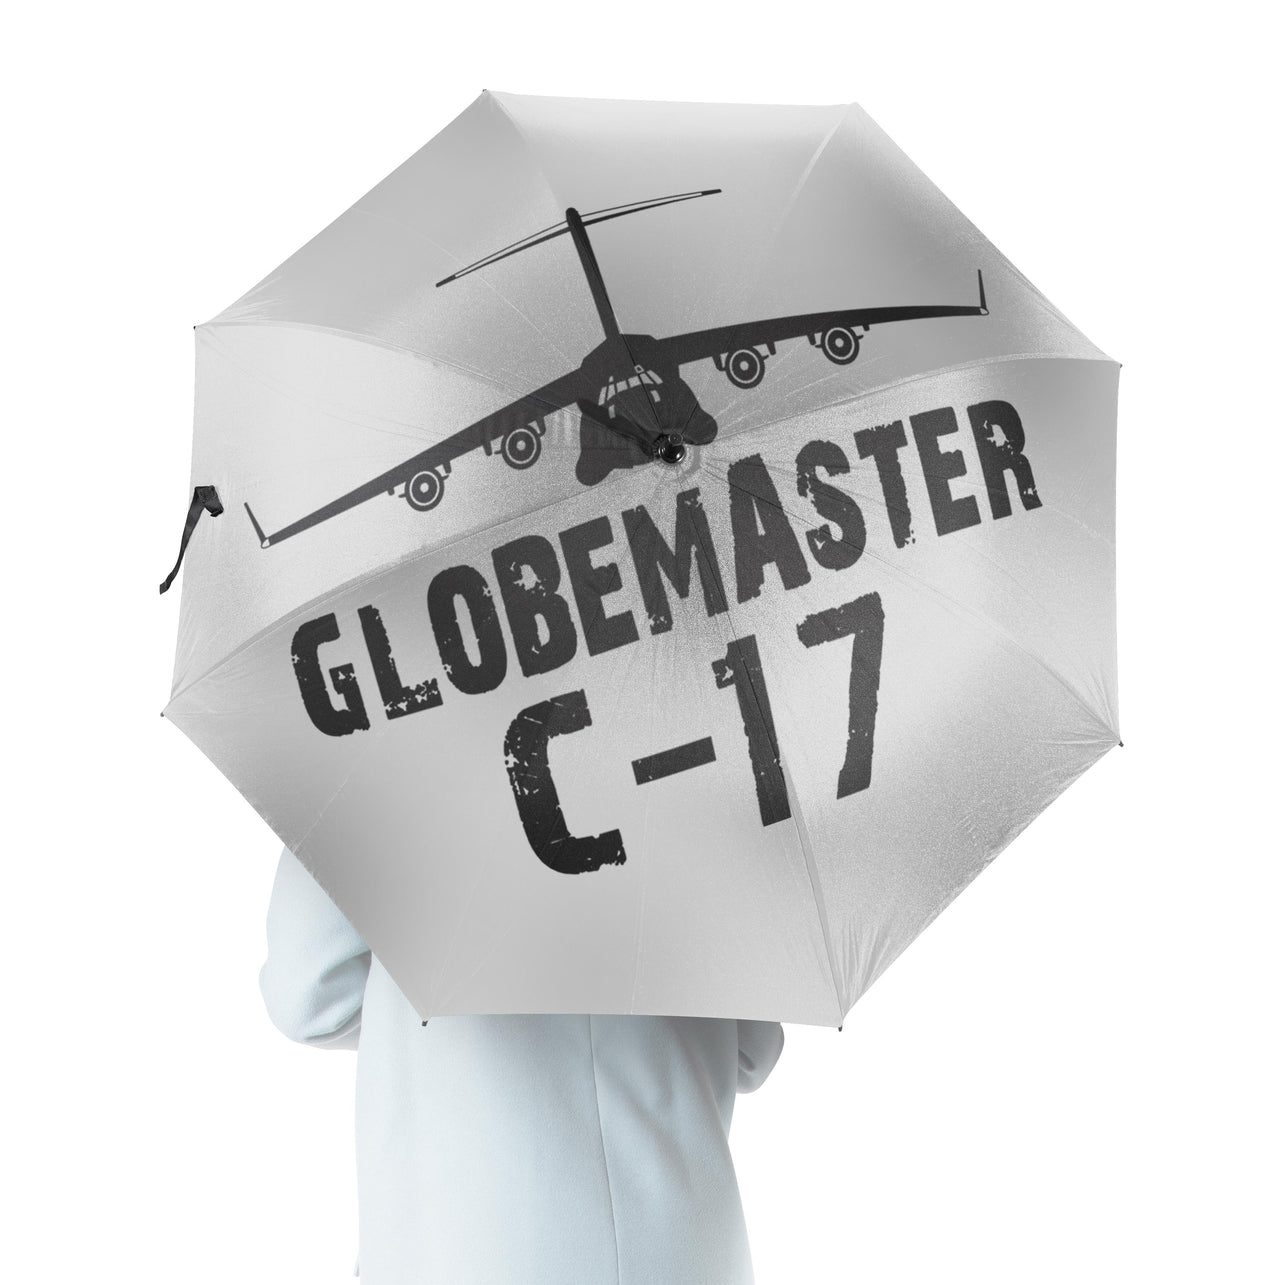 GlobeMaster C-17 & Plane Designed Umbrella